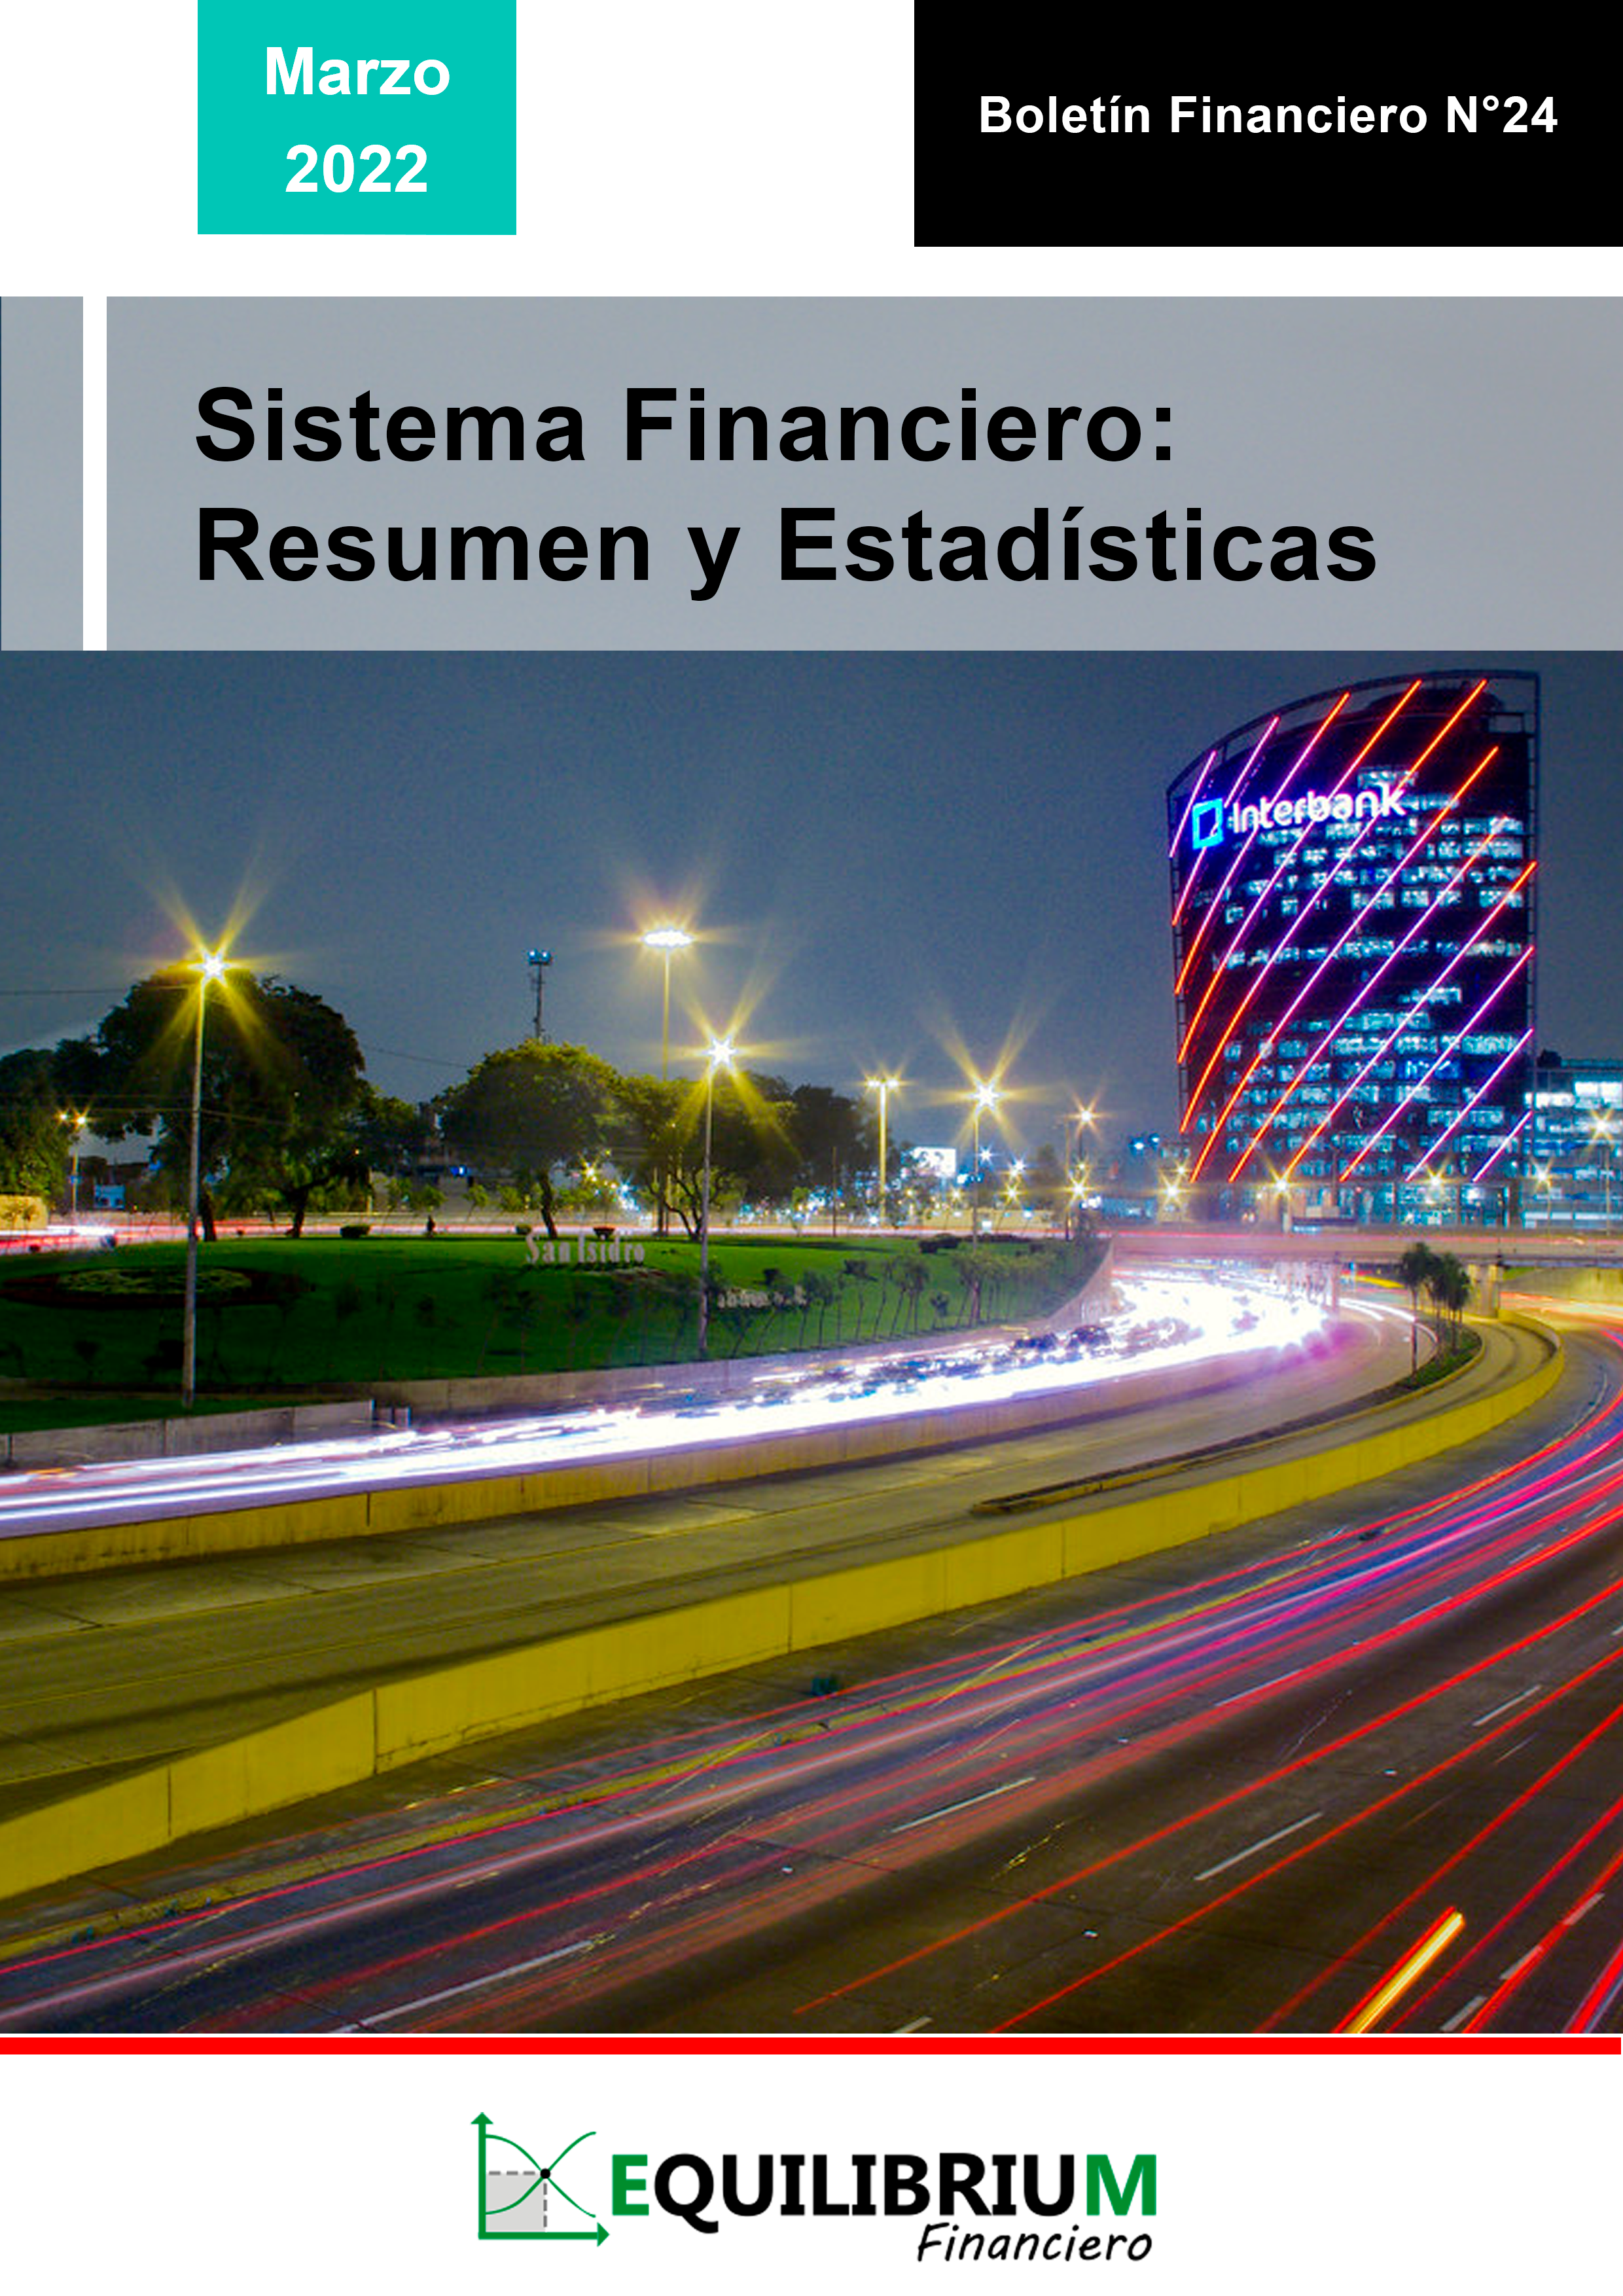 Sistema Financiero: Resumen y Estadísticas Marzo 2022